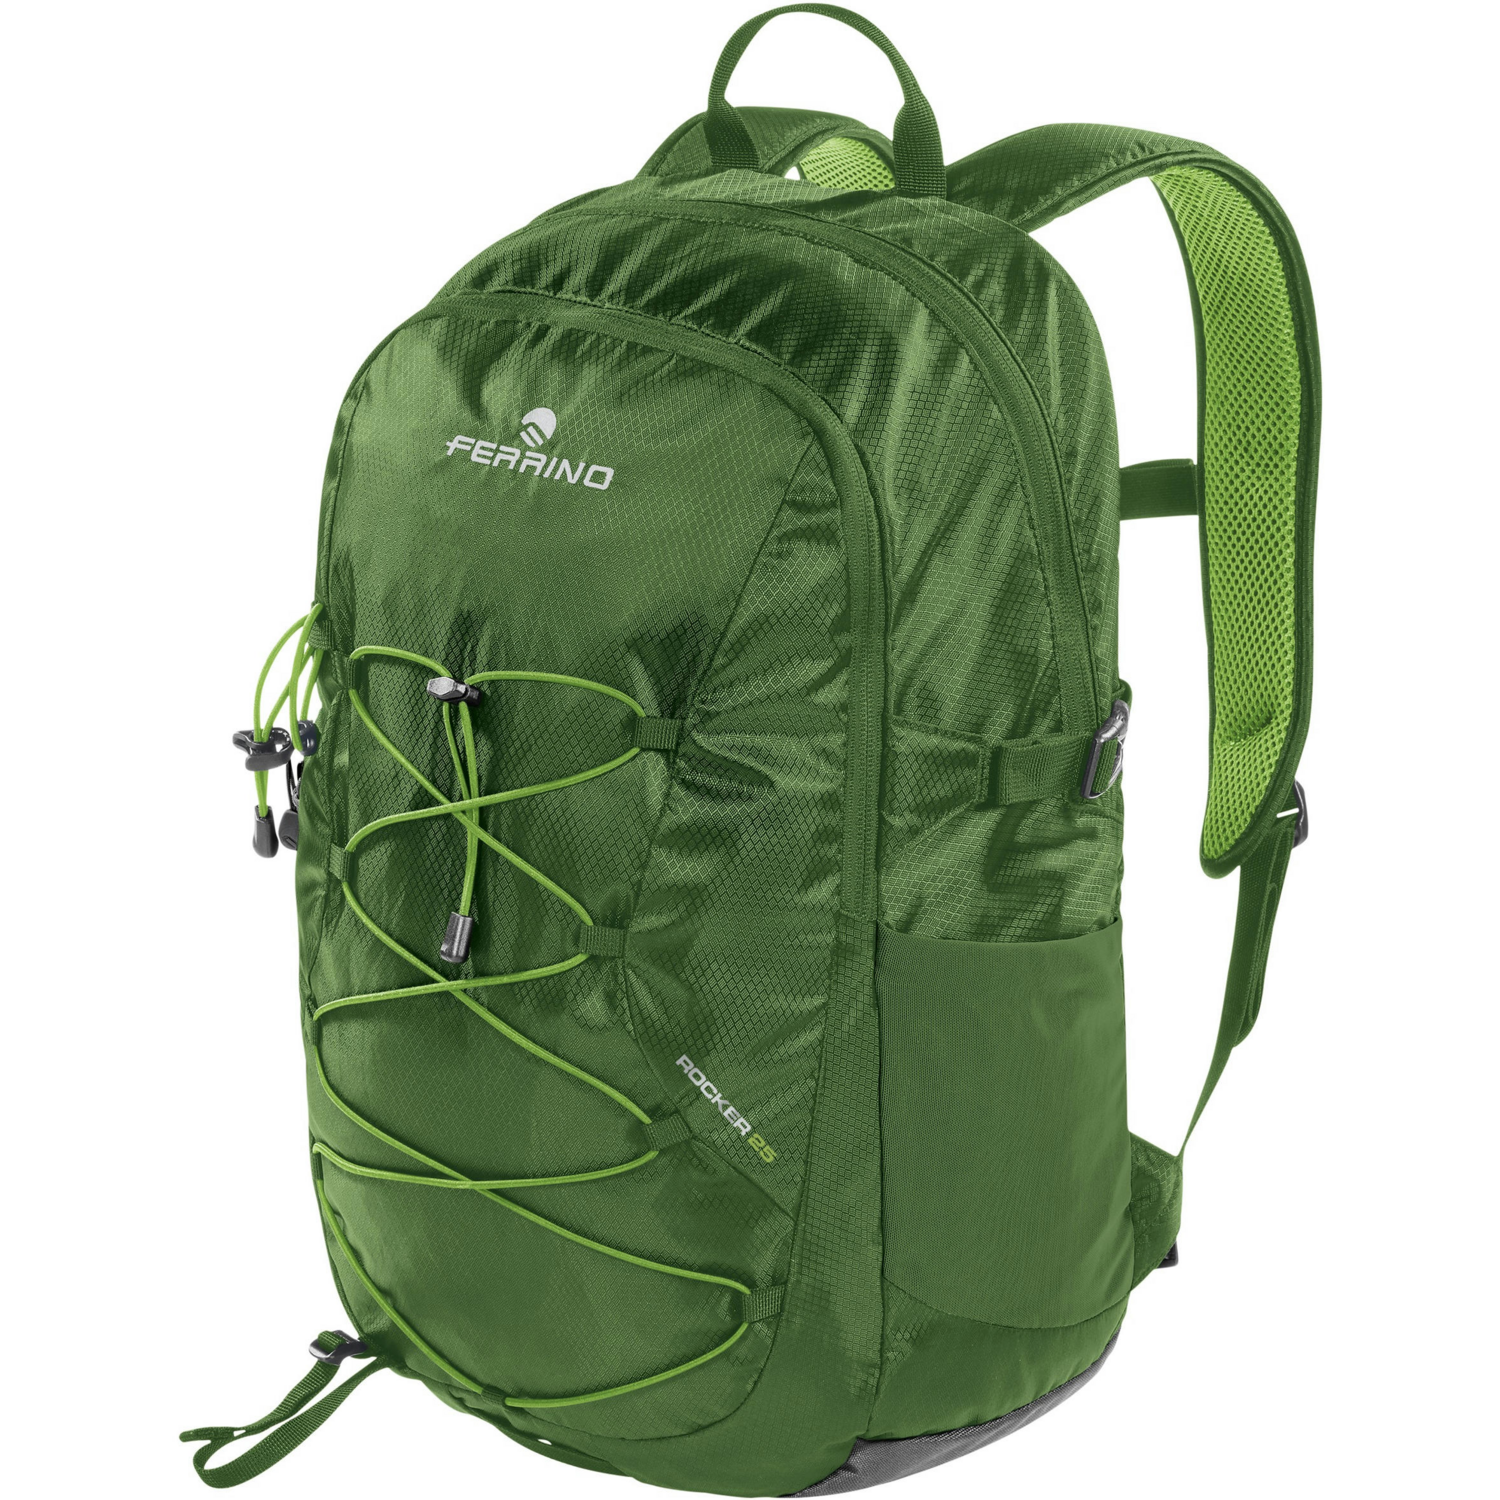 Міський рюкзак Ferrino Backpack Rocker 25L Green (75806IVV)фото